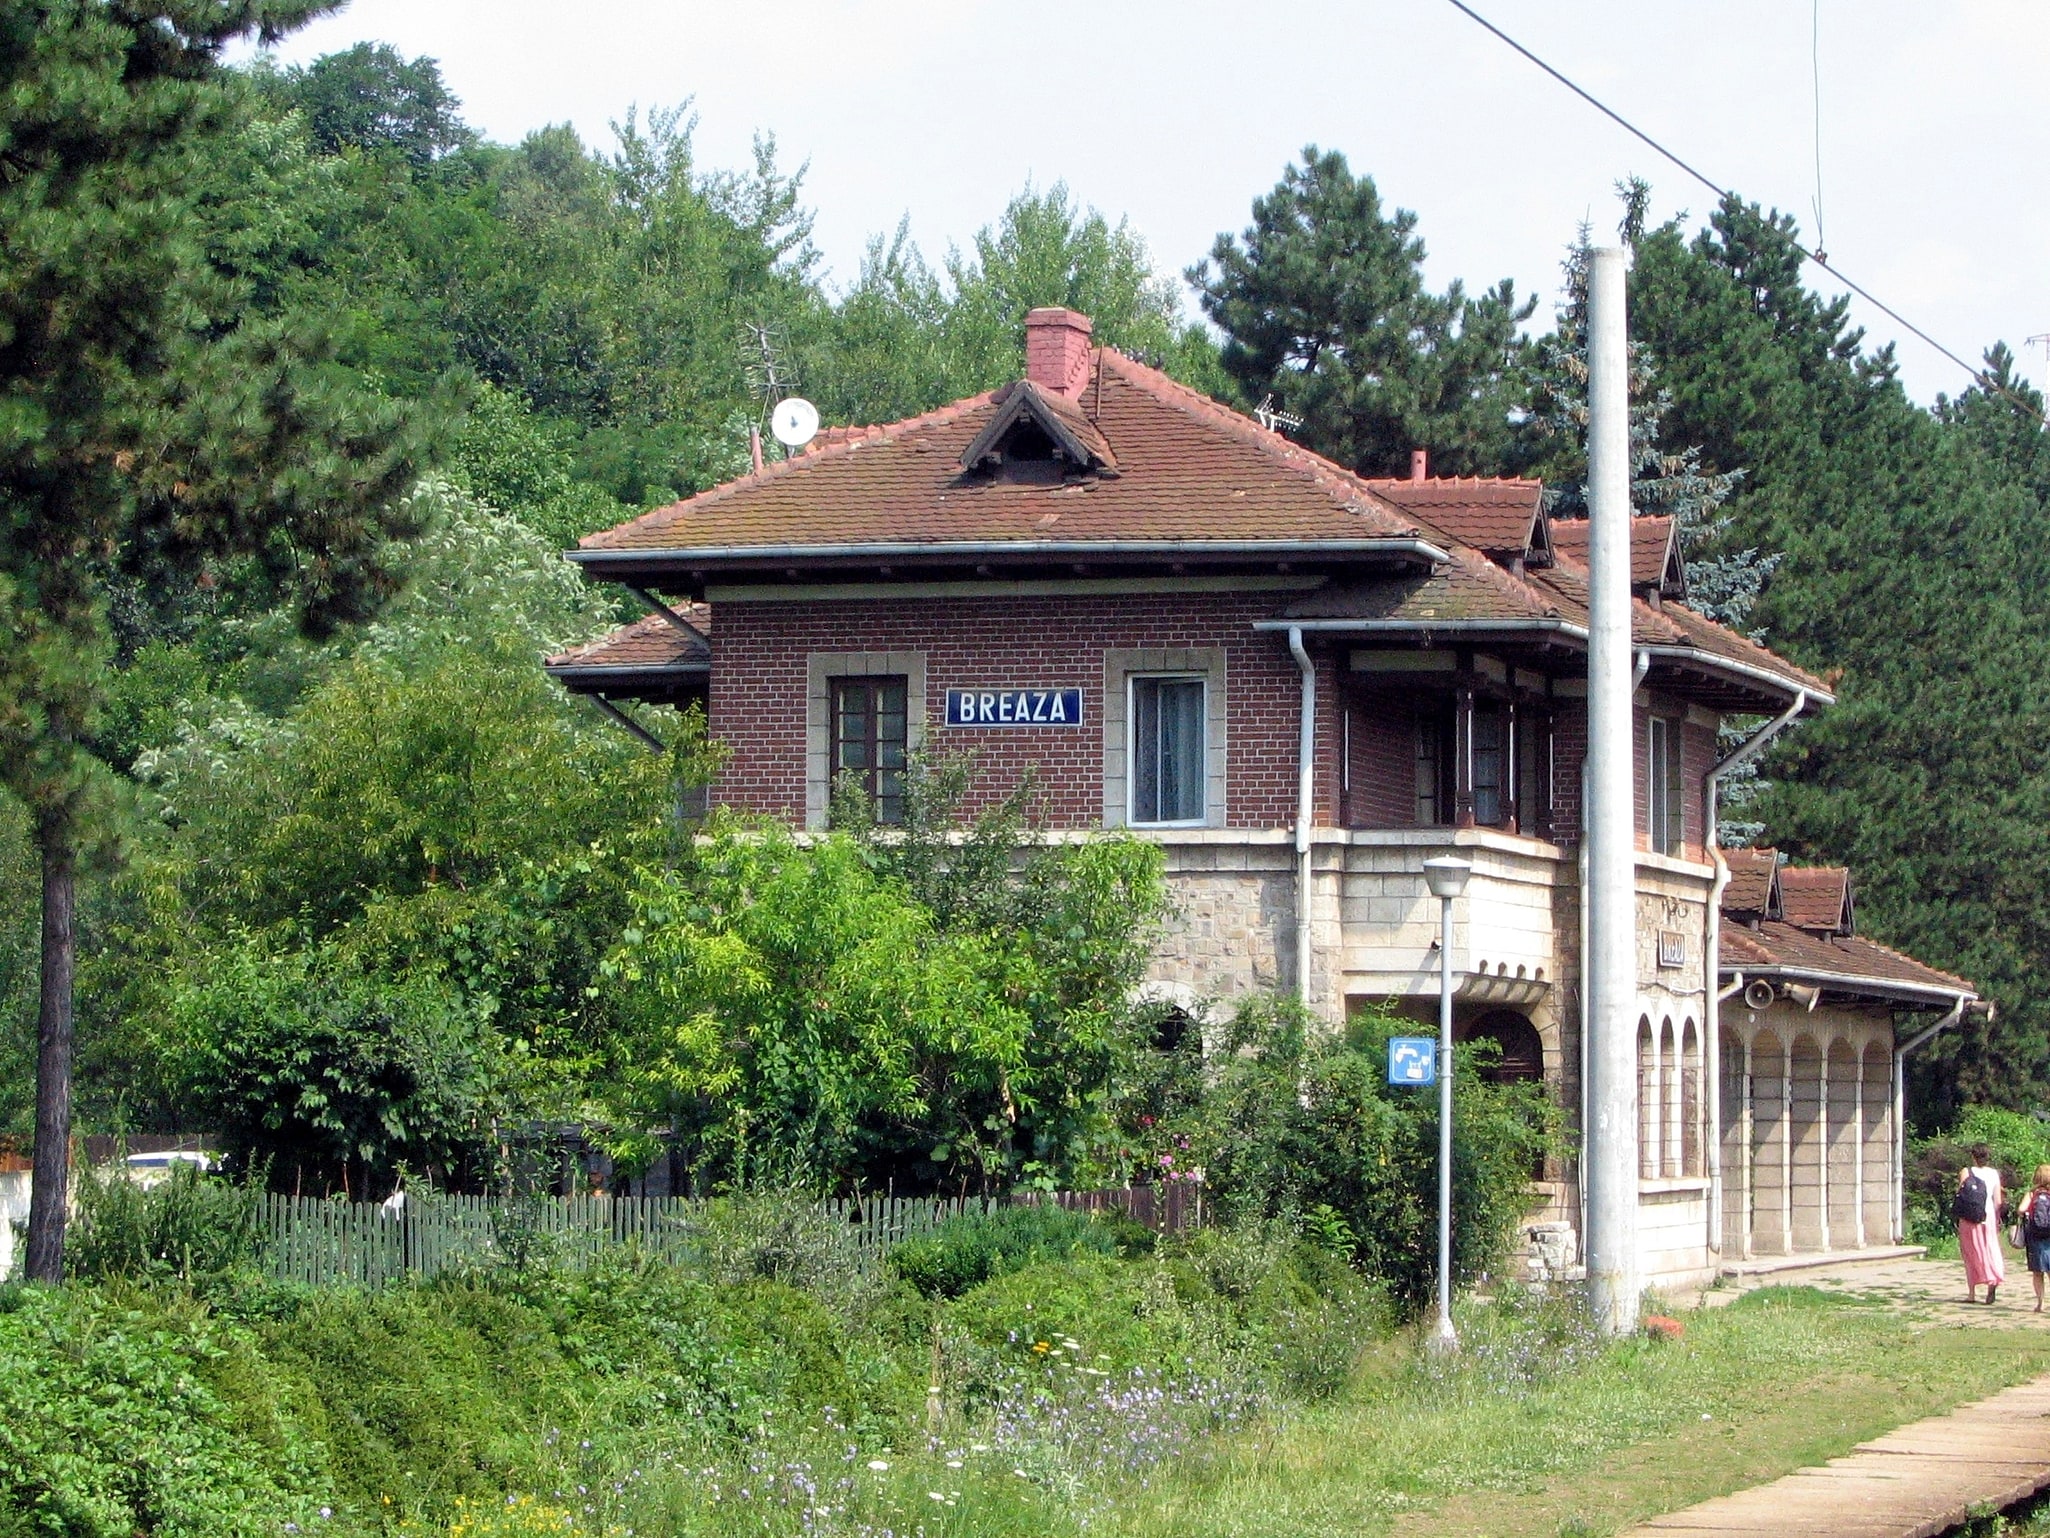 Breaza, Romania